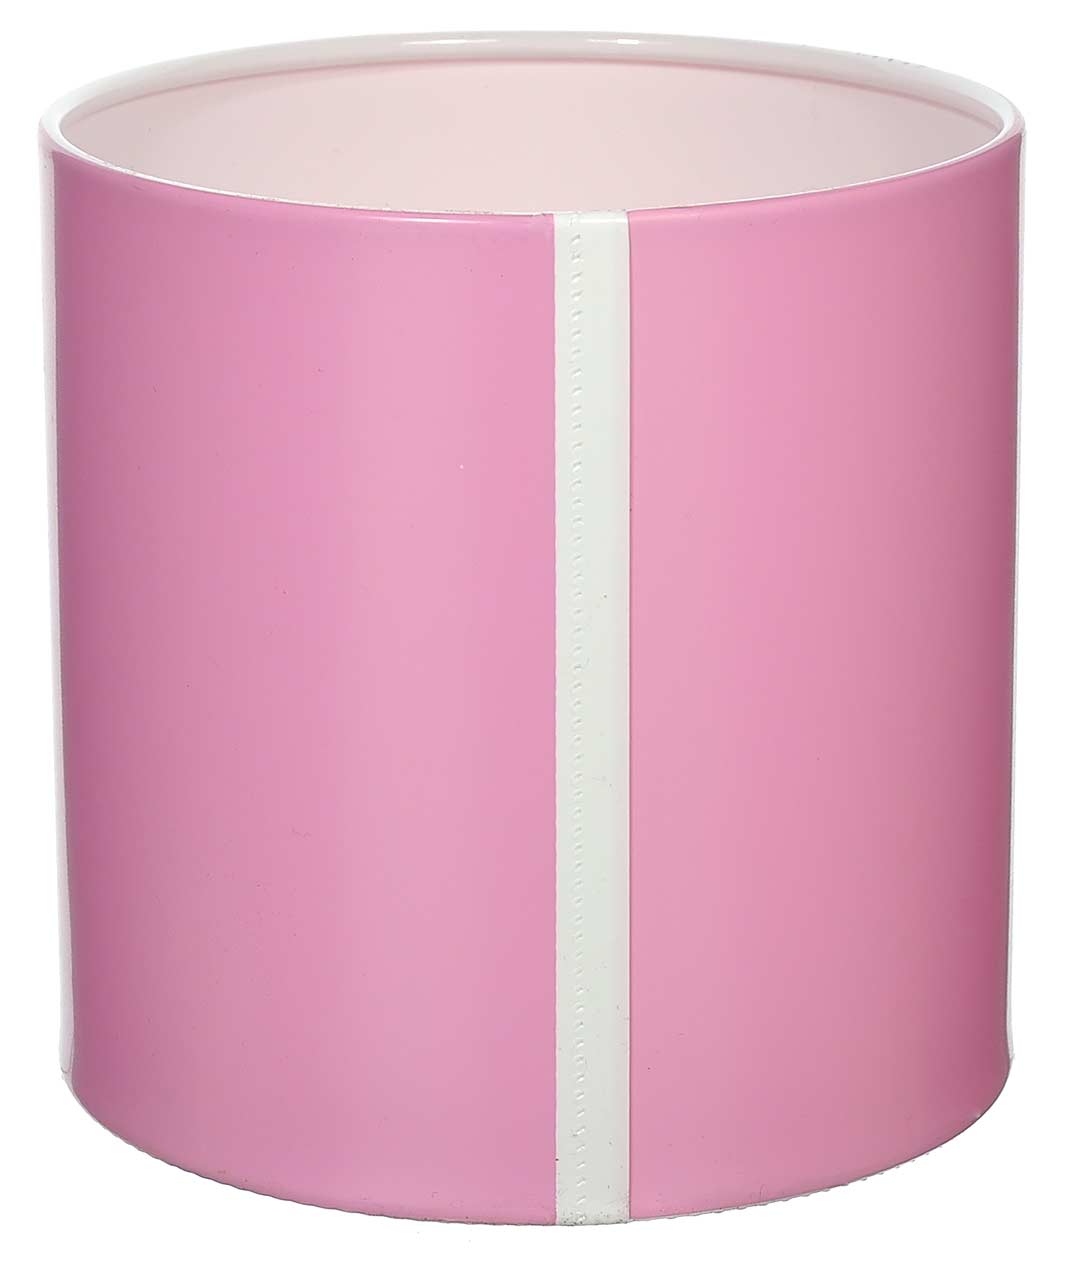 Изображение Коробка для цветов пластиковая WITH YOU бледно-розовая 140/140